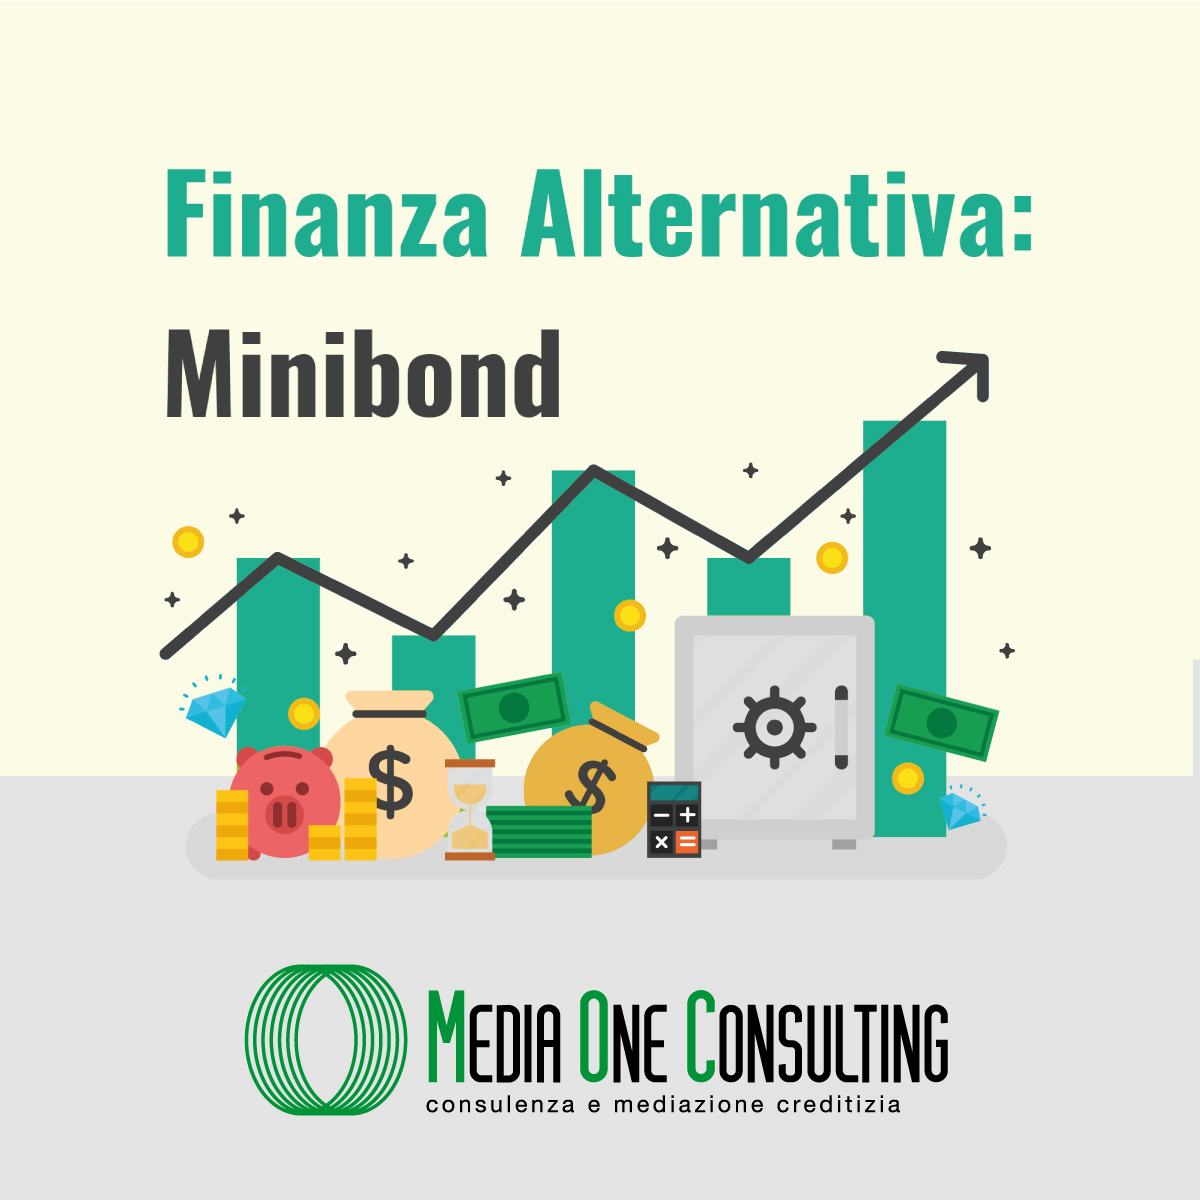 I minibond, uno strumento finanziario di cui in tanti parlano ma che pochi conoscono.